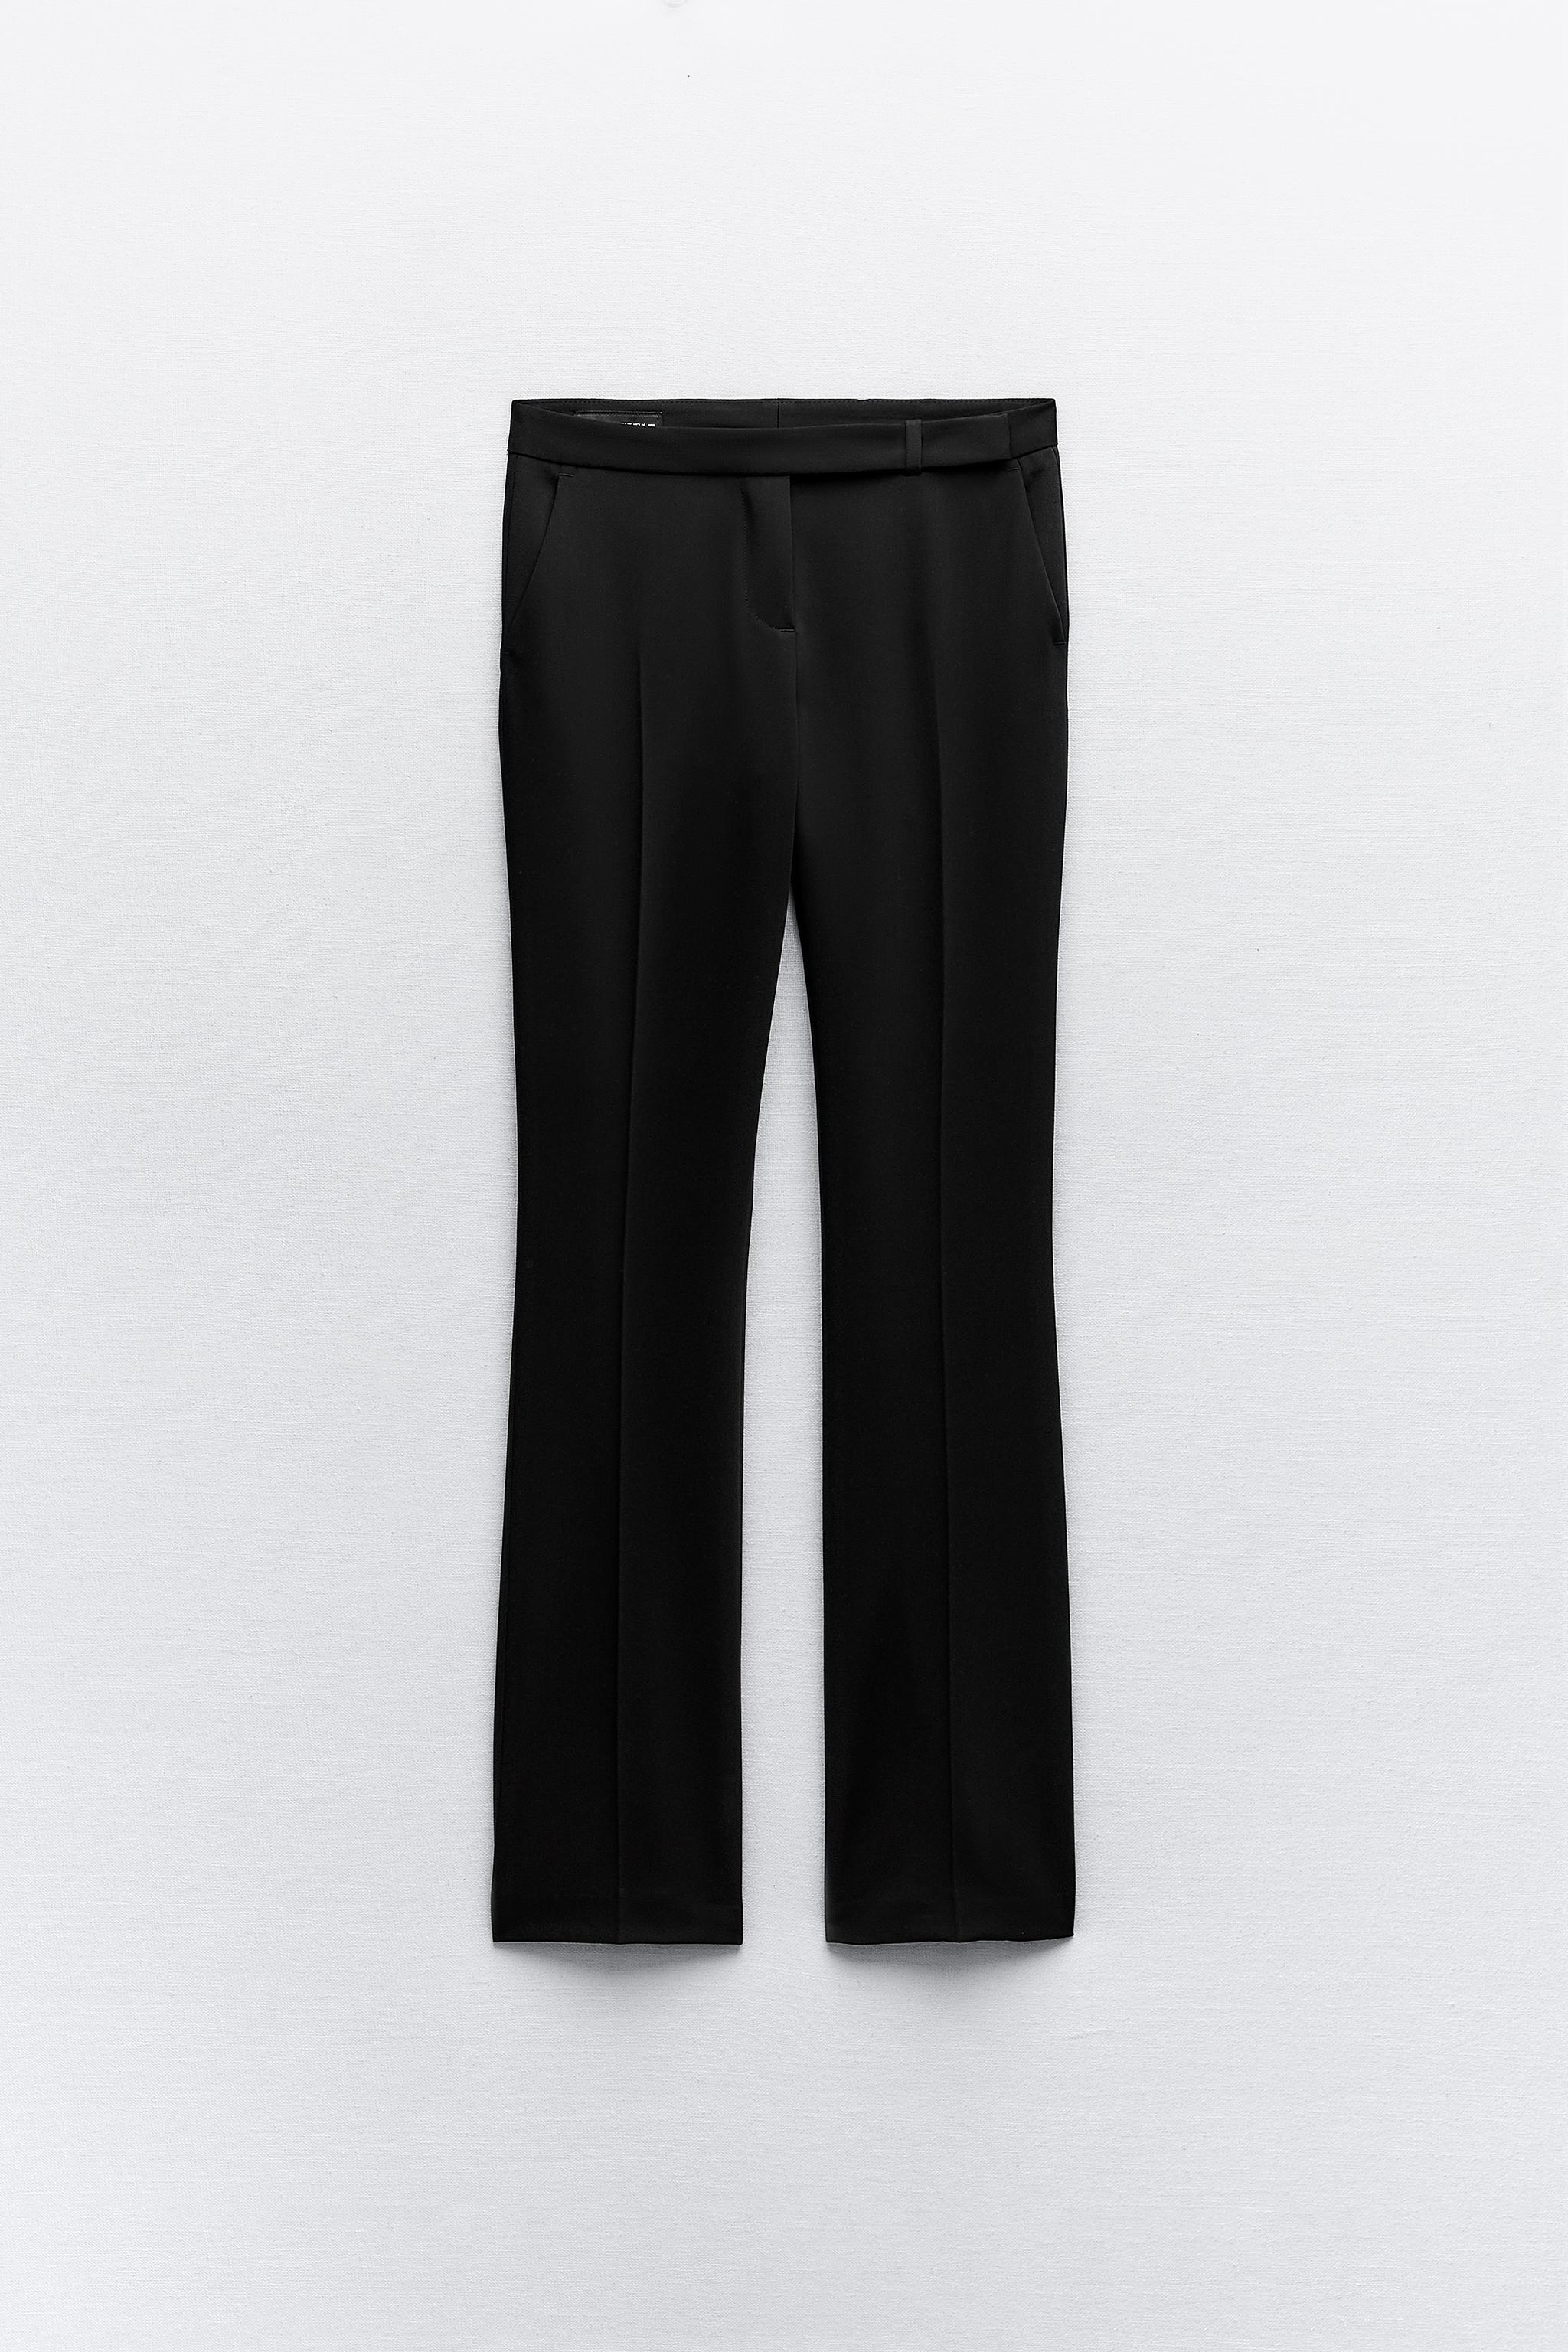 Zara Black Work Pants